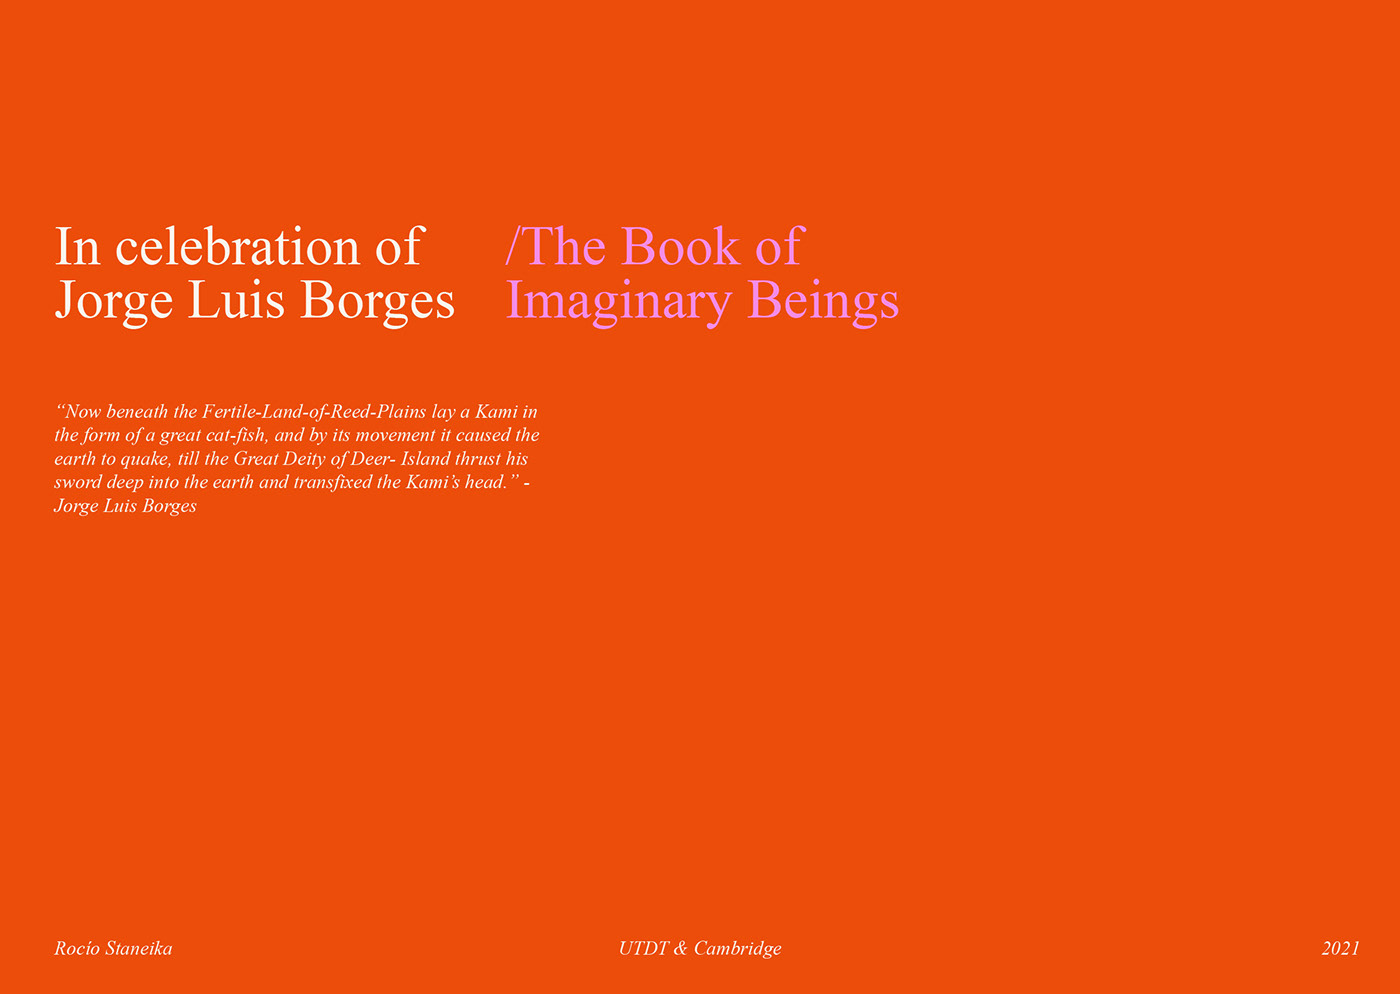 collage digitalart Borges literature cover design Digital Art  artwork Graphic Designer